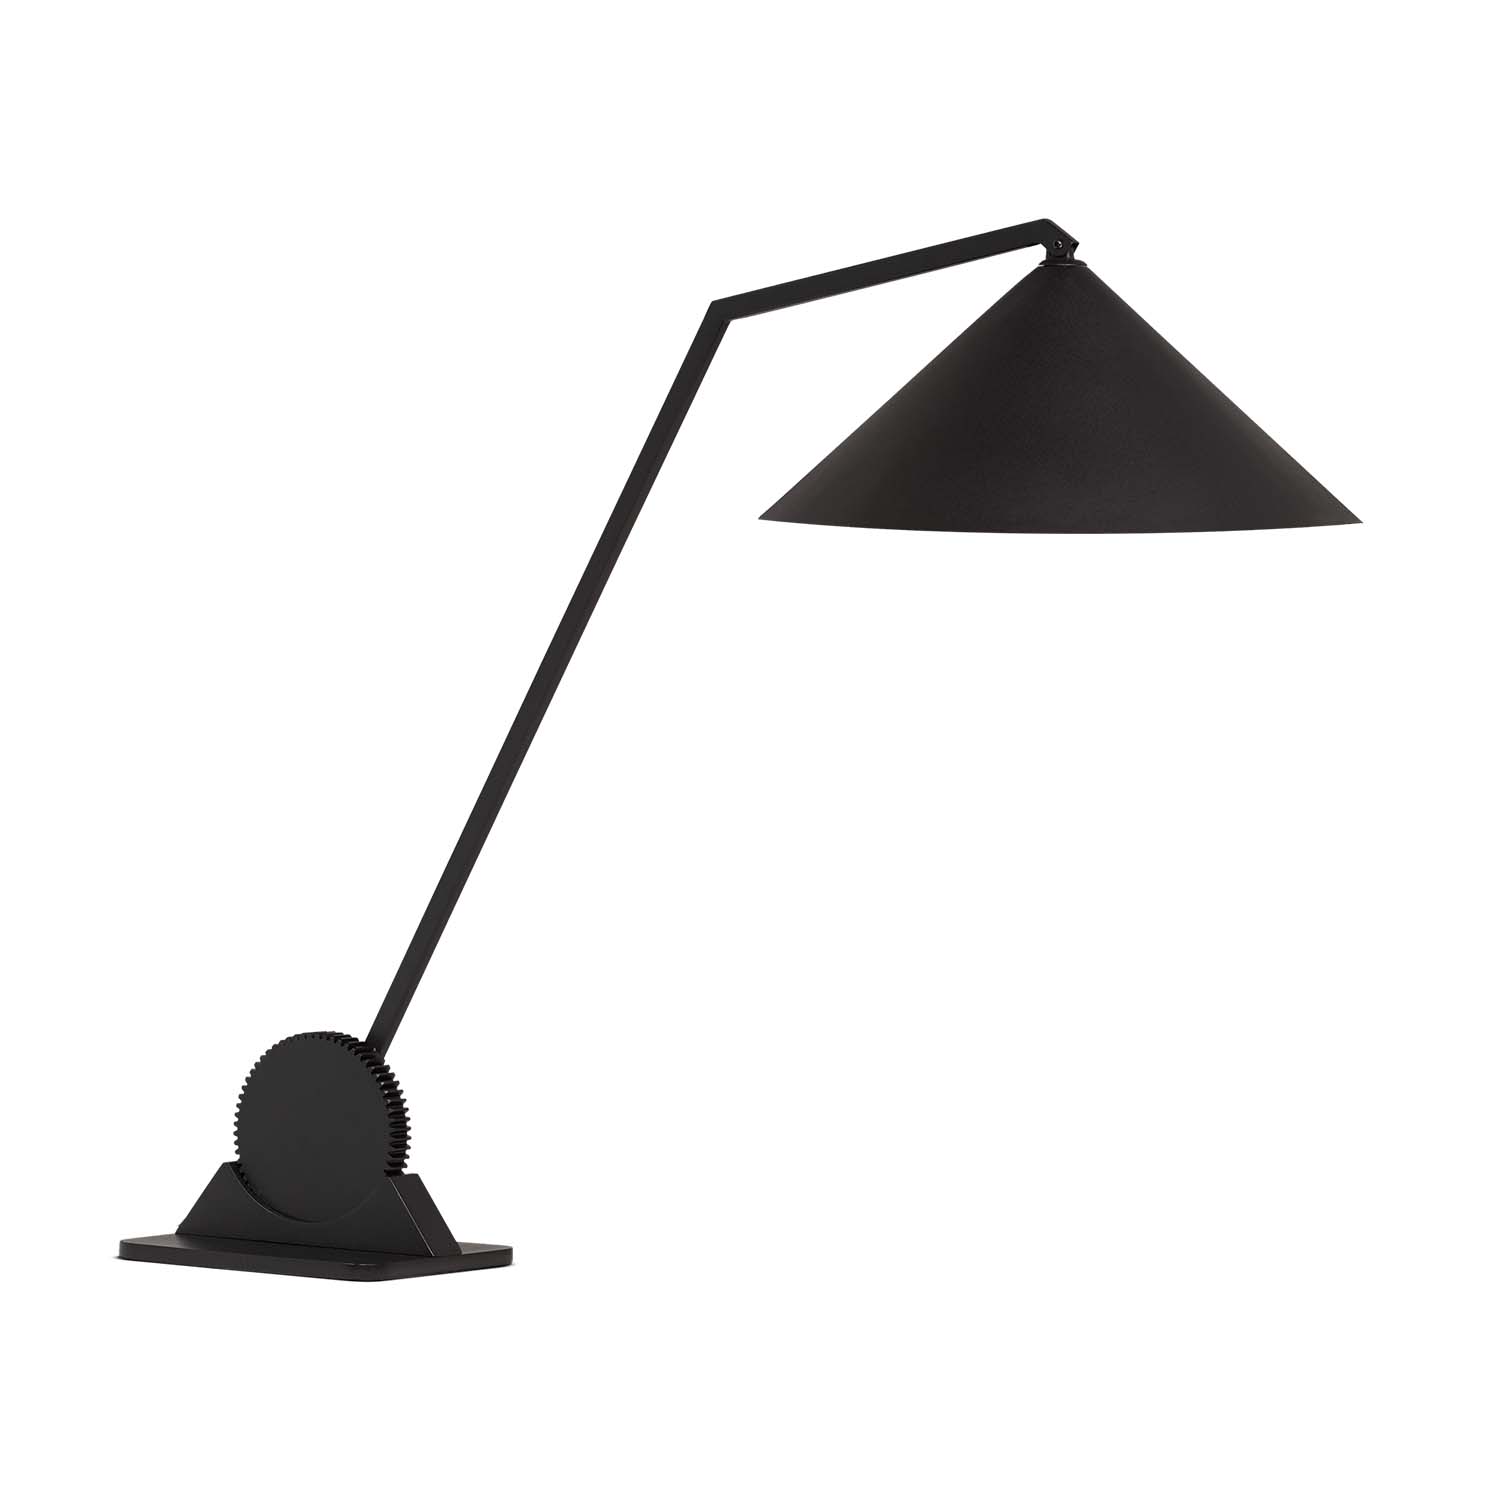 GEAR – Design und moderne schwarze Schreibtischlampe